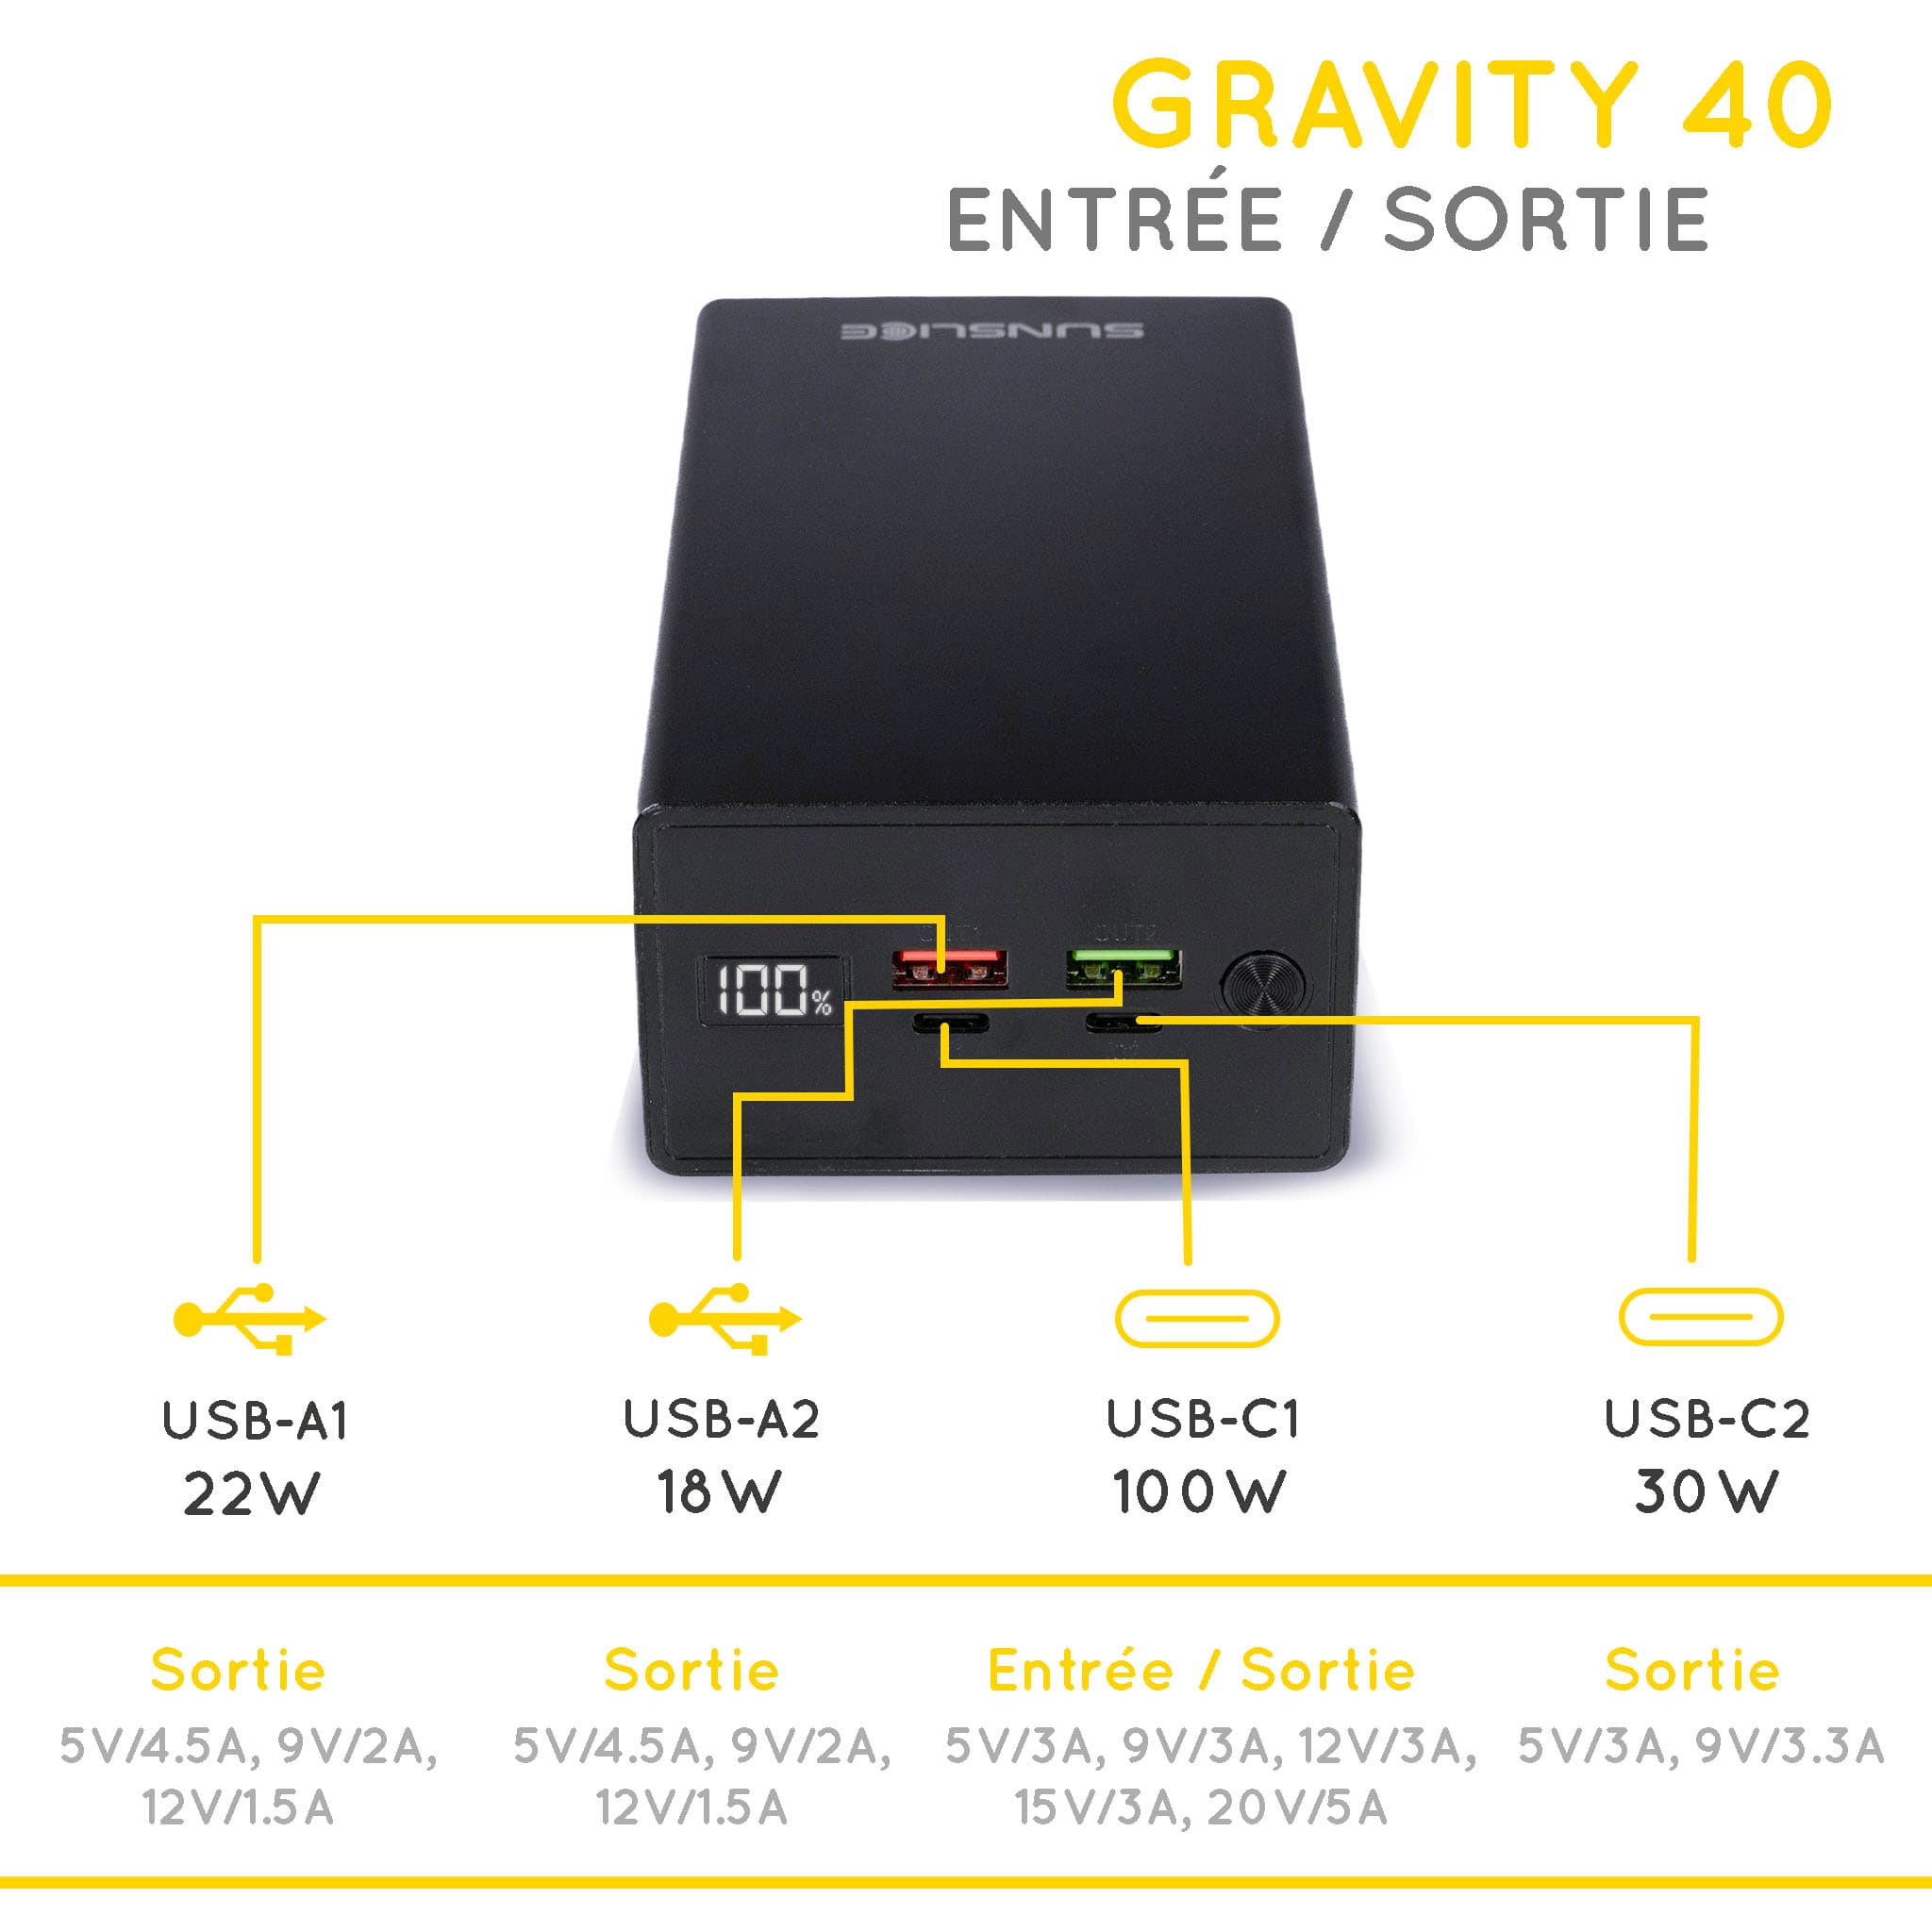 Gravity 40 batterie de secours pour ordinateur portable sortie/entrée : USB-A1 22W, USB-A2 18W, USB-C1 100W, USB-C2 30W